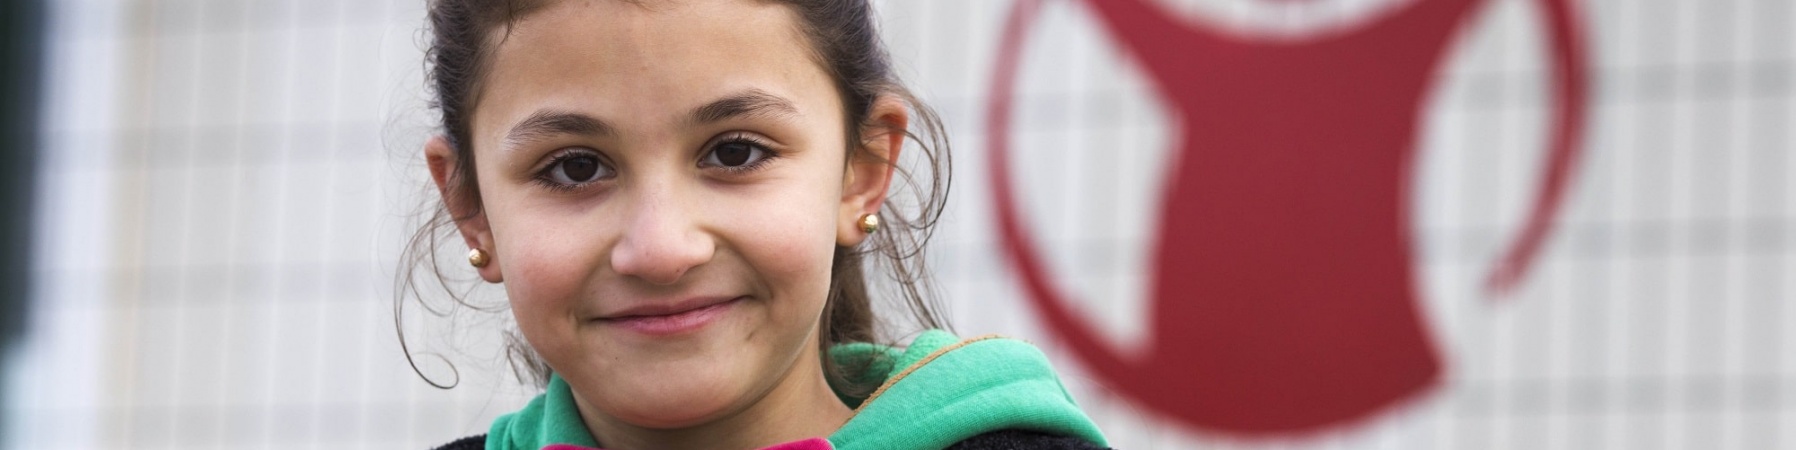 bambina sorridente con maglioncino verde e giacca, sullo sfondo il logo di save the children